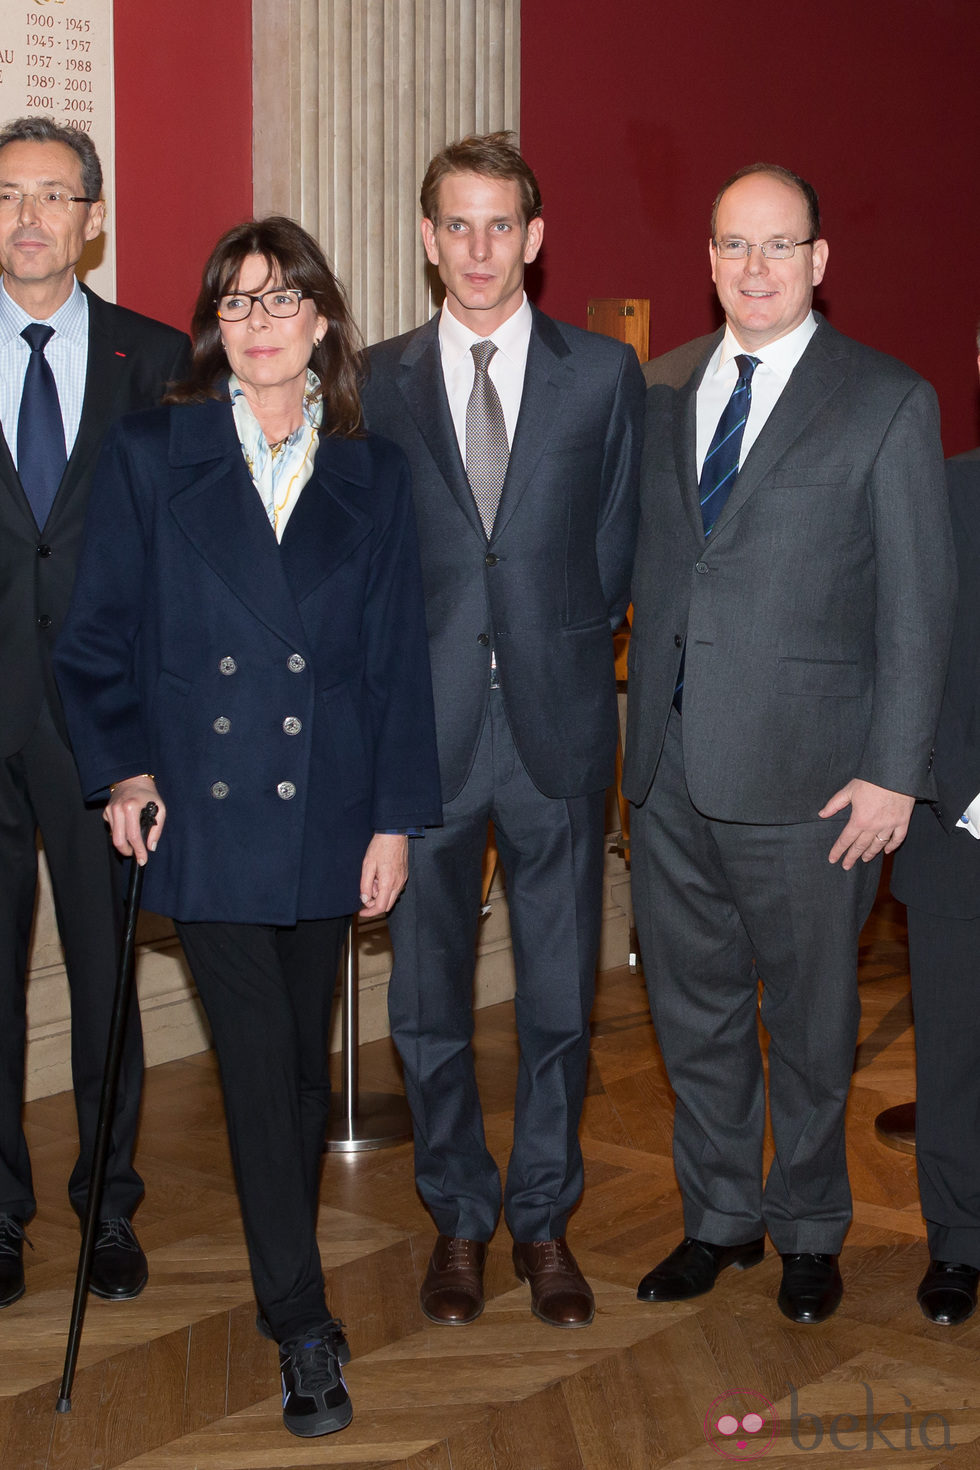 Carolina de Mónaco, Andrea Casiraghi y el Príncipe Alberto en la presentación de una película